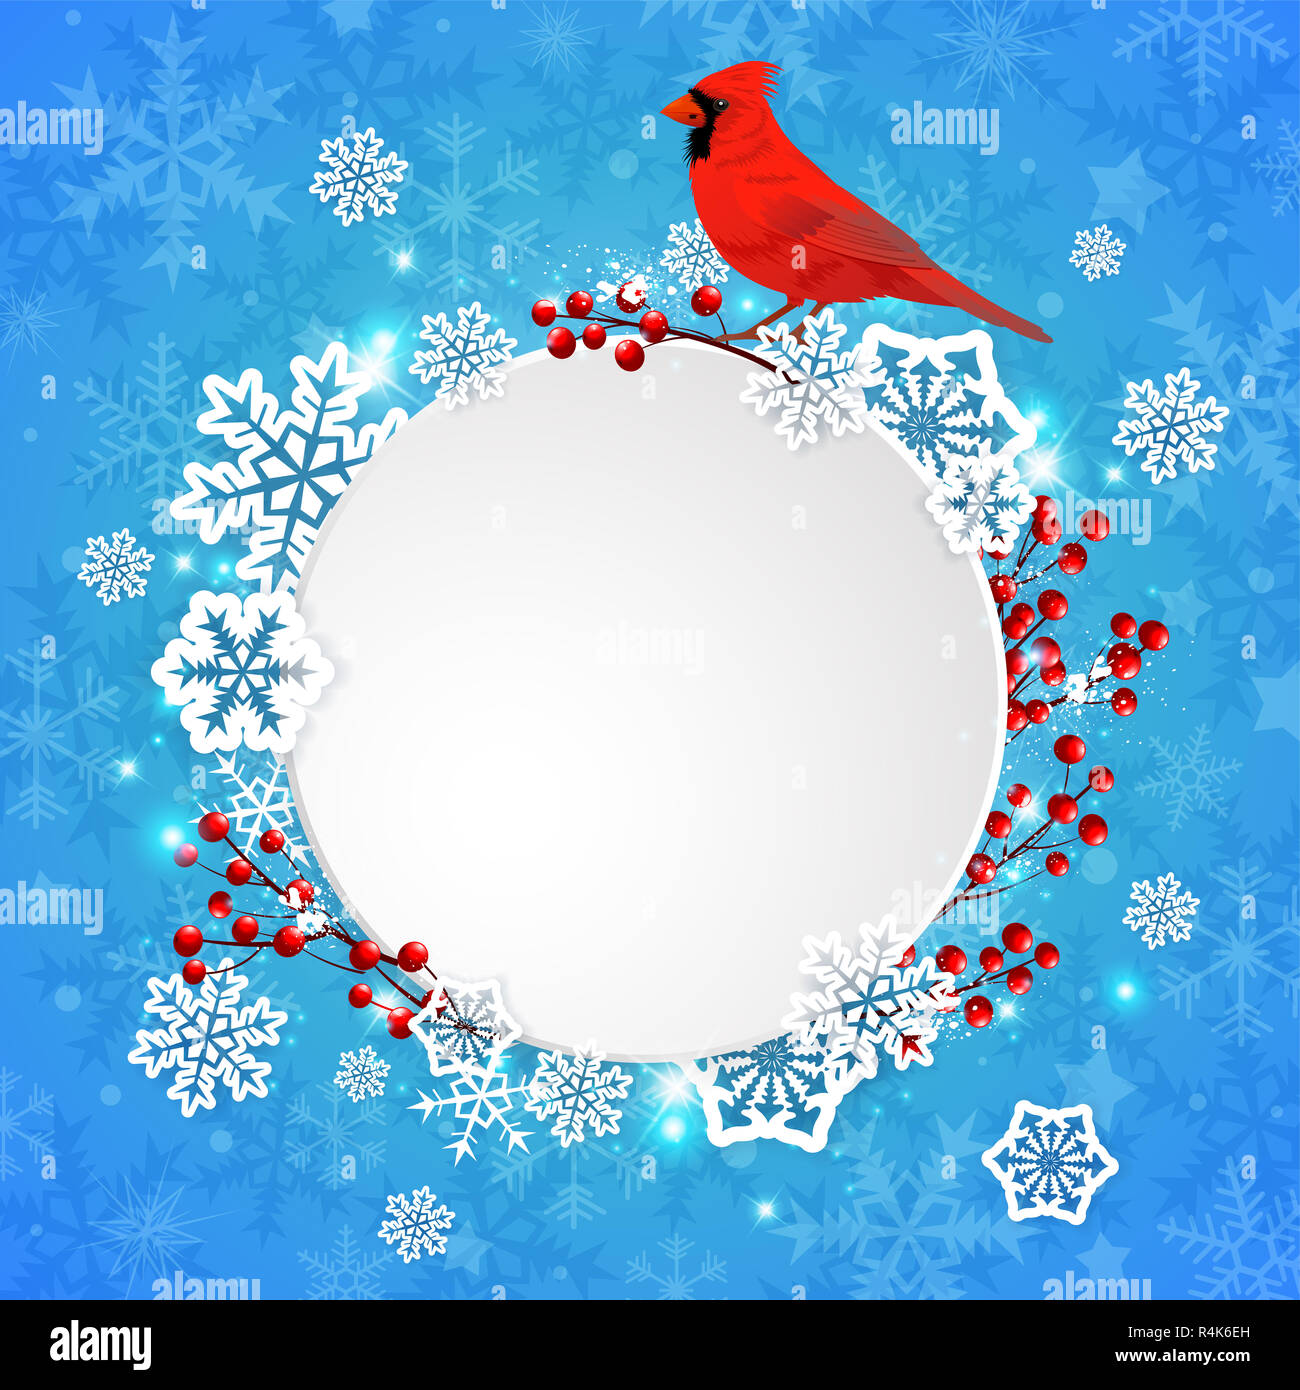 Banner di natale con il Libro bianco di fiocchi di neve e rosso cardinale bird su uno sfondo blu. Anno nuovo bigliettino. Foto Stock